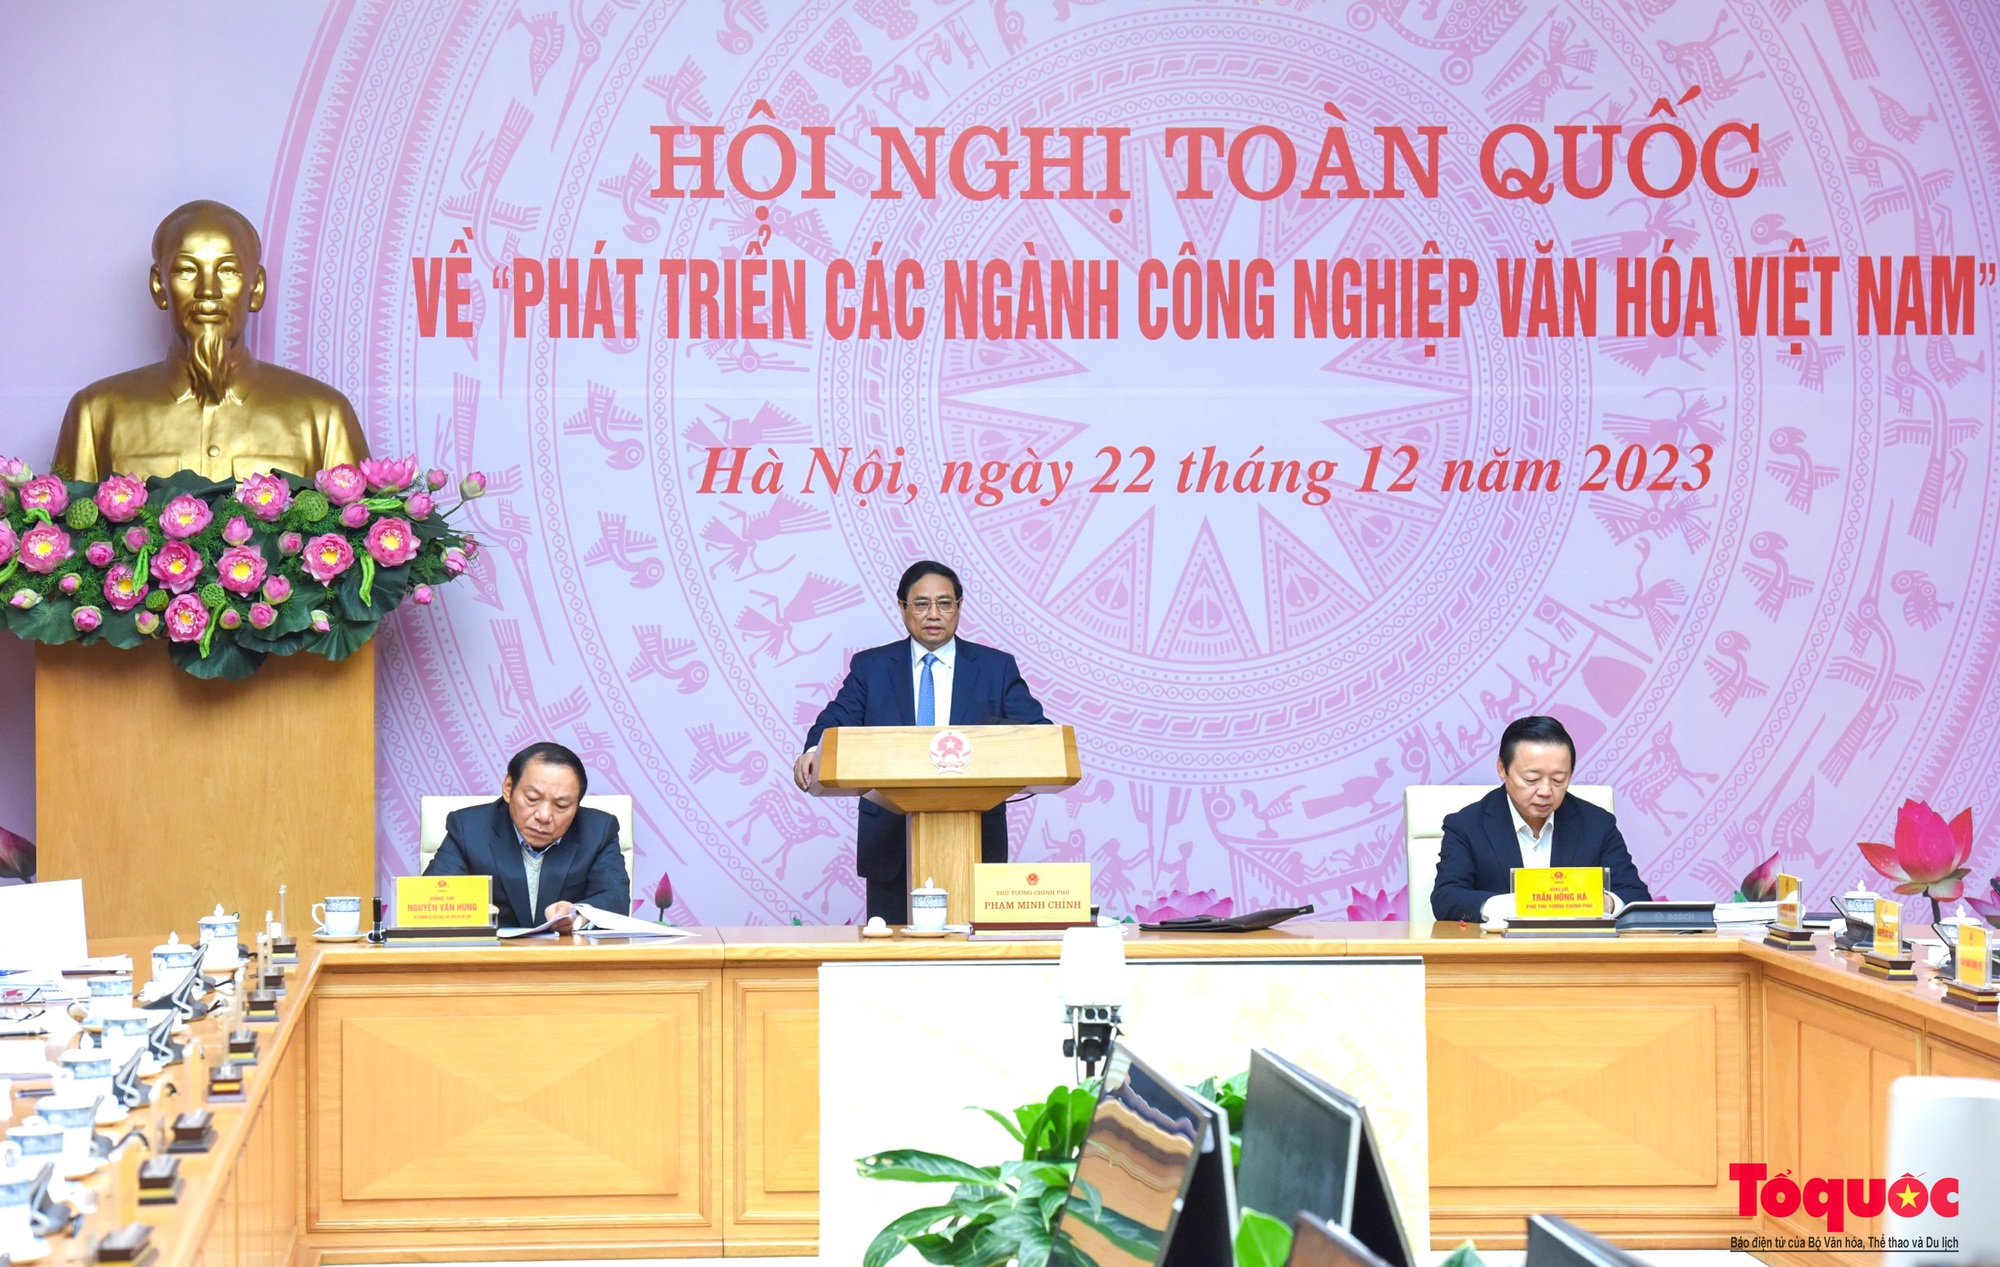 Chùm ảnh: Hội nghị toàn quốc về phát triển các ngành công nghiệp văn hóa Việt Nam - Ảnh 2.